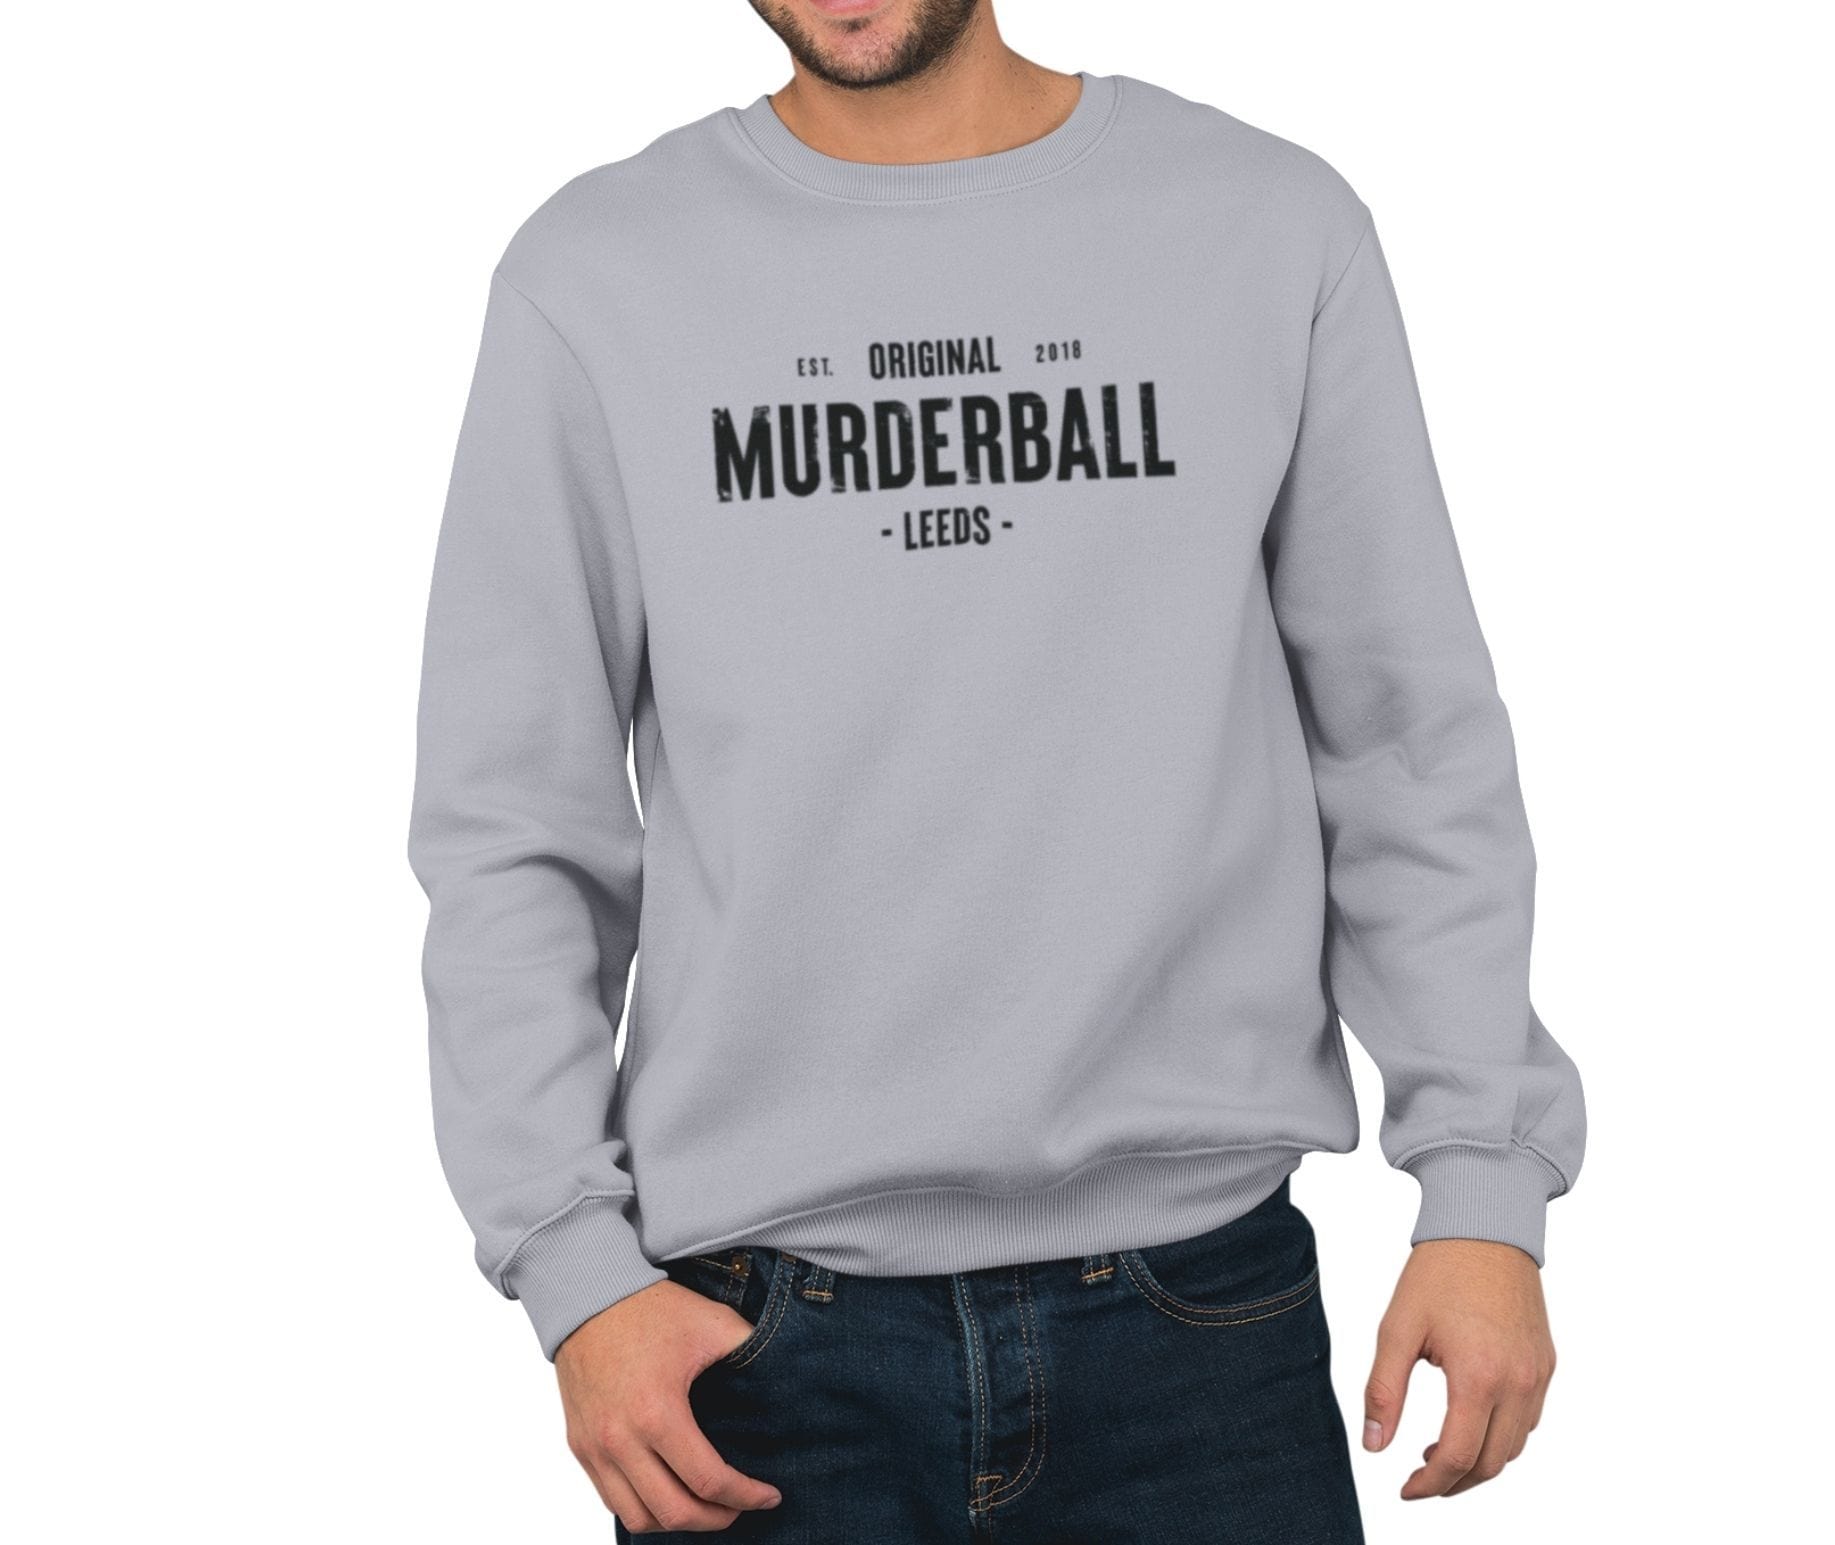 Murderball Sweatshirt